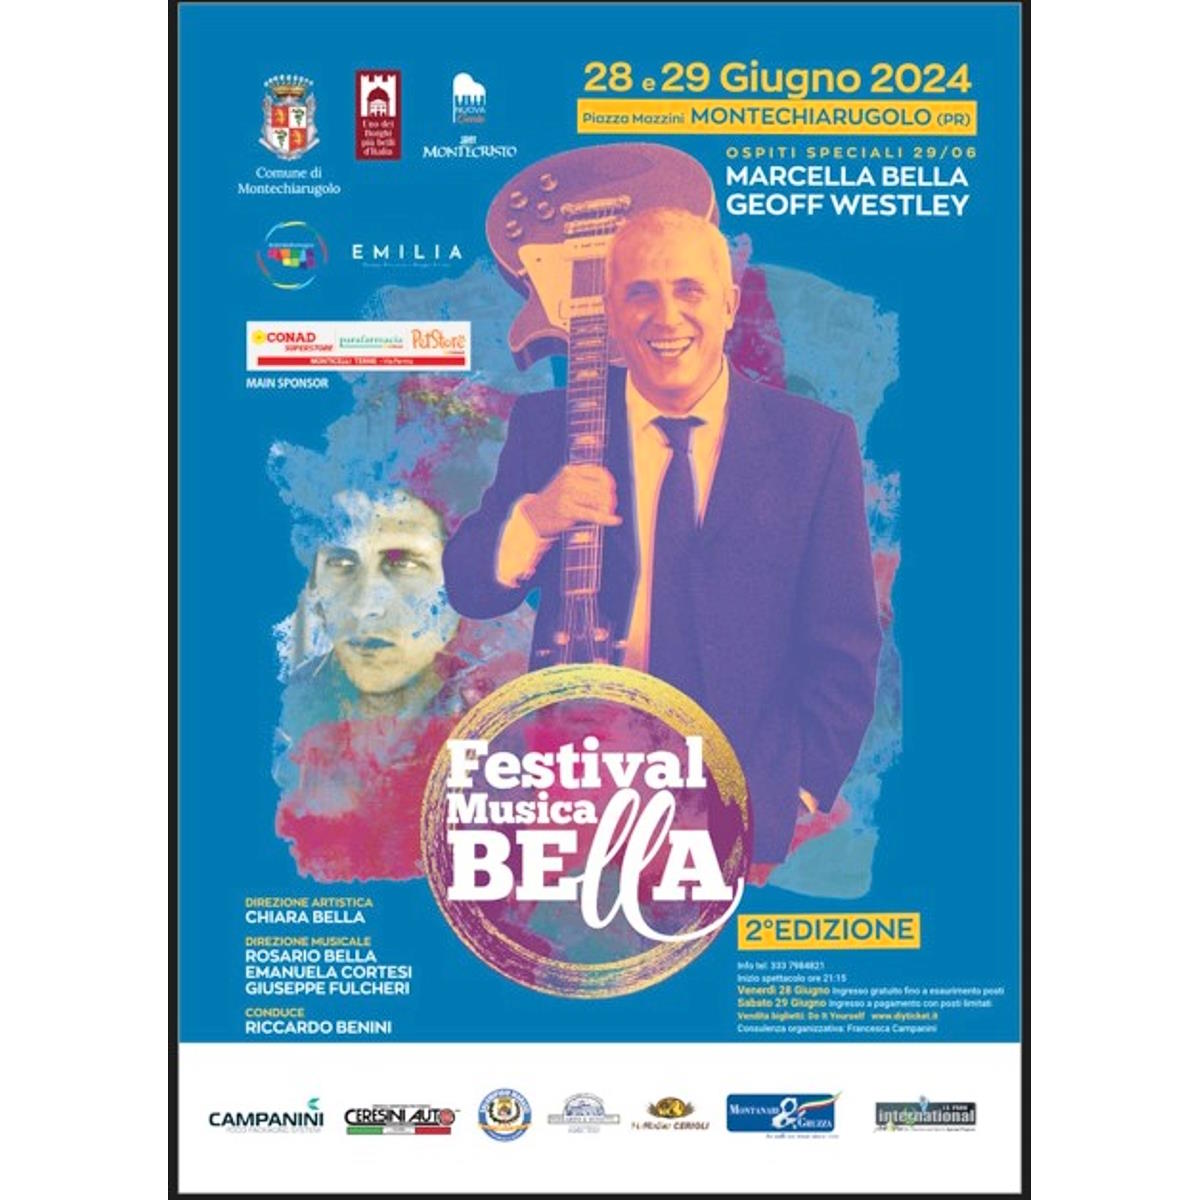 Grande attesa per la 2ª edizione del Festival Musica Bella che si terrà il 28 e il 29 giugno a Montechiarugolo (Parma). Ospiti speciali della serata finale Marcella Bella e Geoff Westley